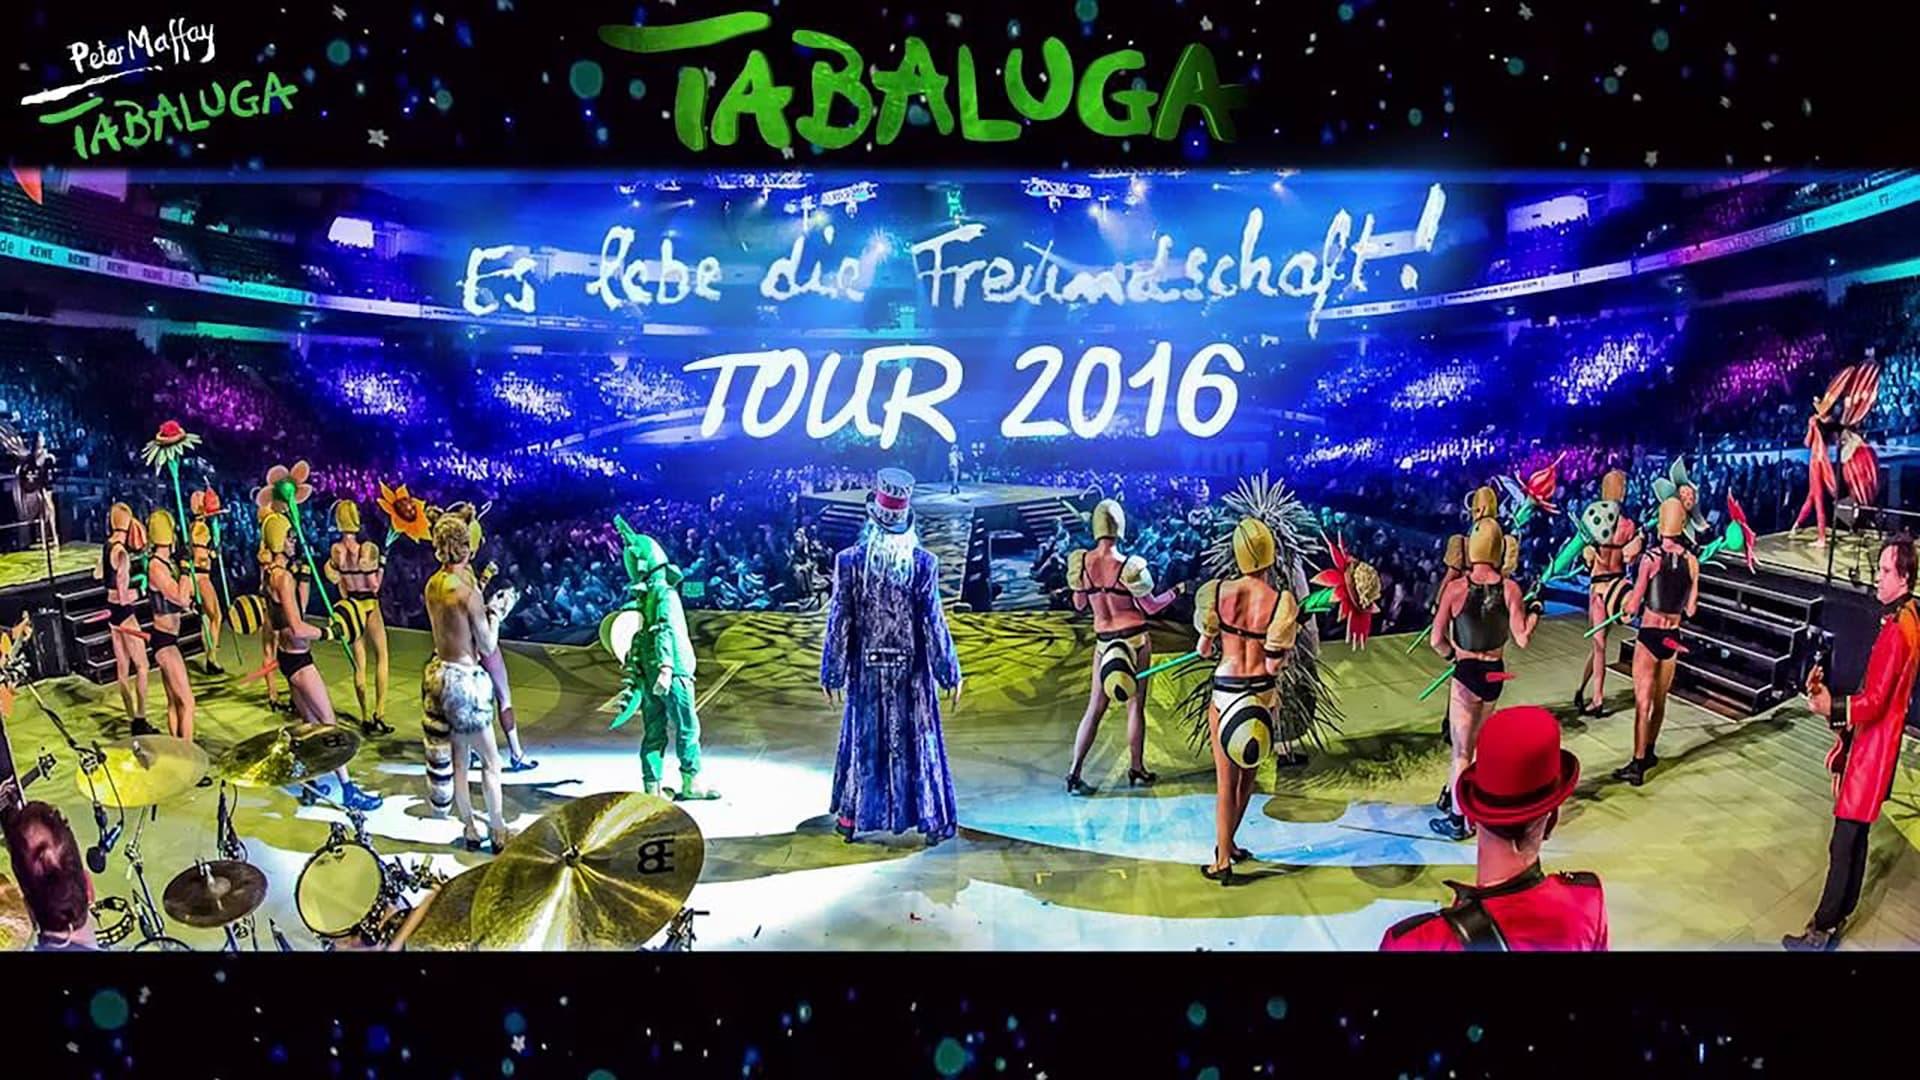 Tabaluga - Es lebe die Freundschaft! Live backdrop